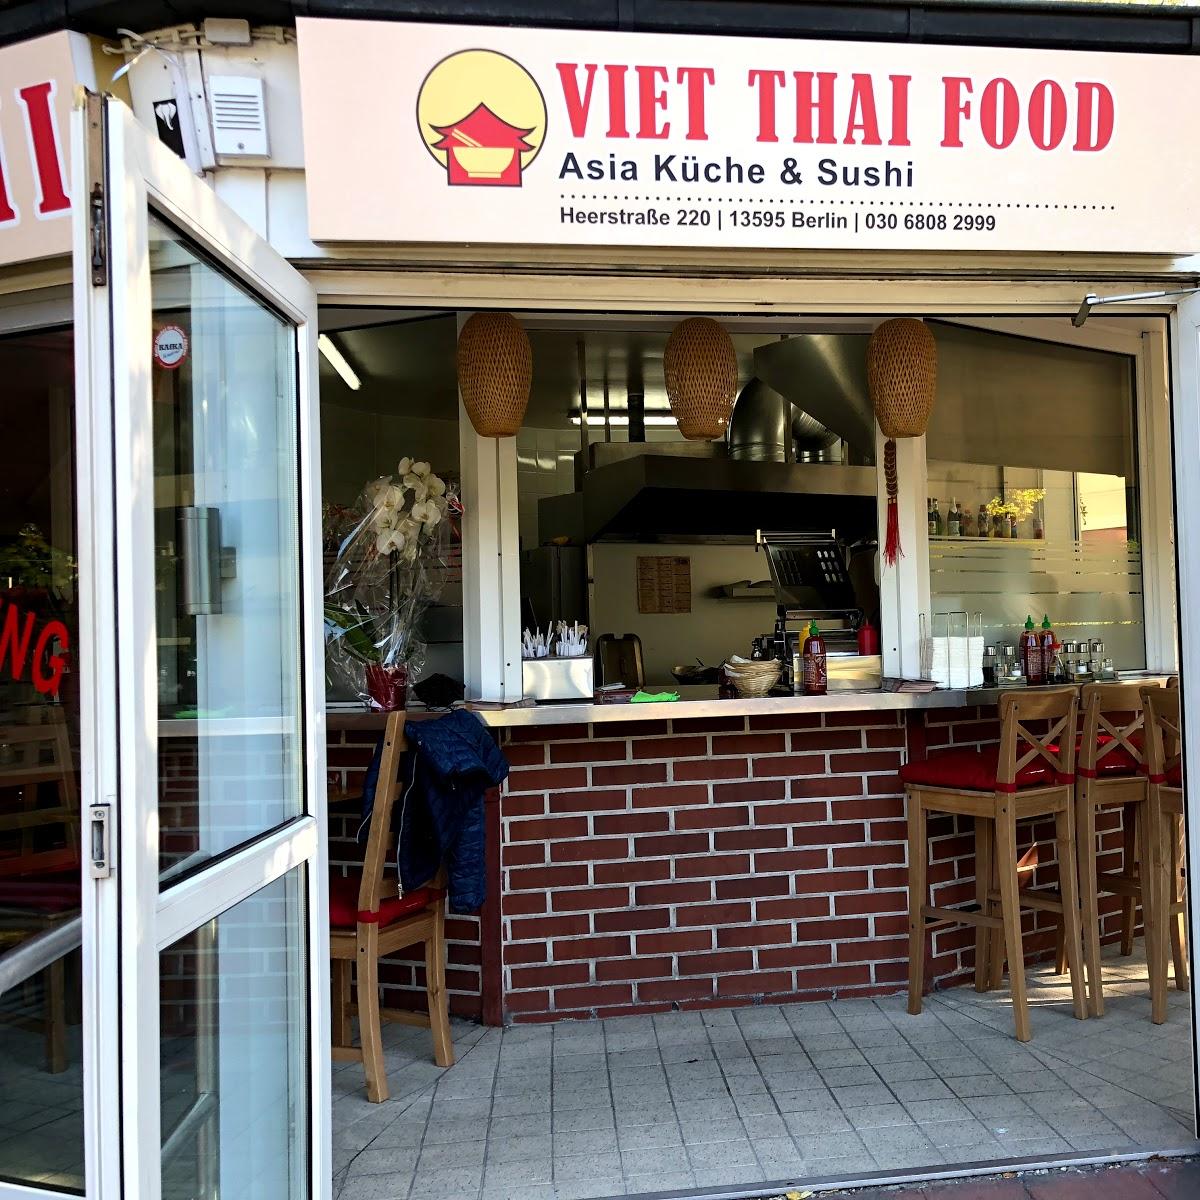 Restaurant "Viet Thai Food" in Berlin